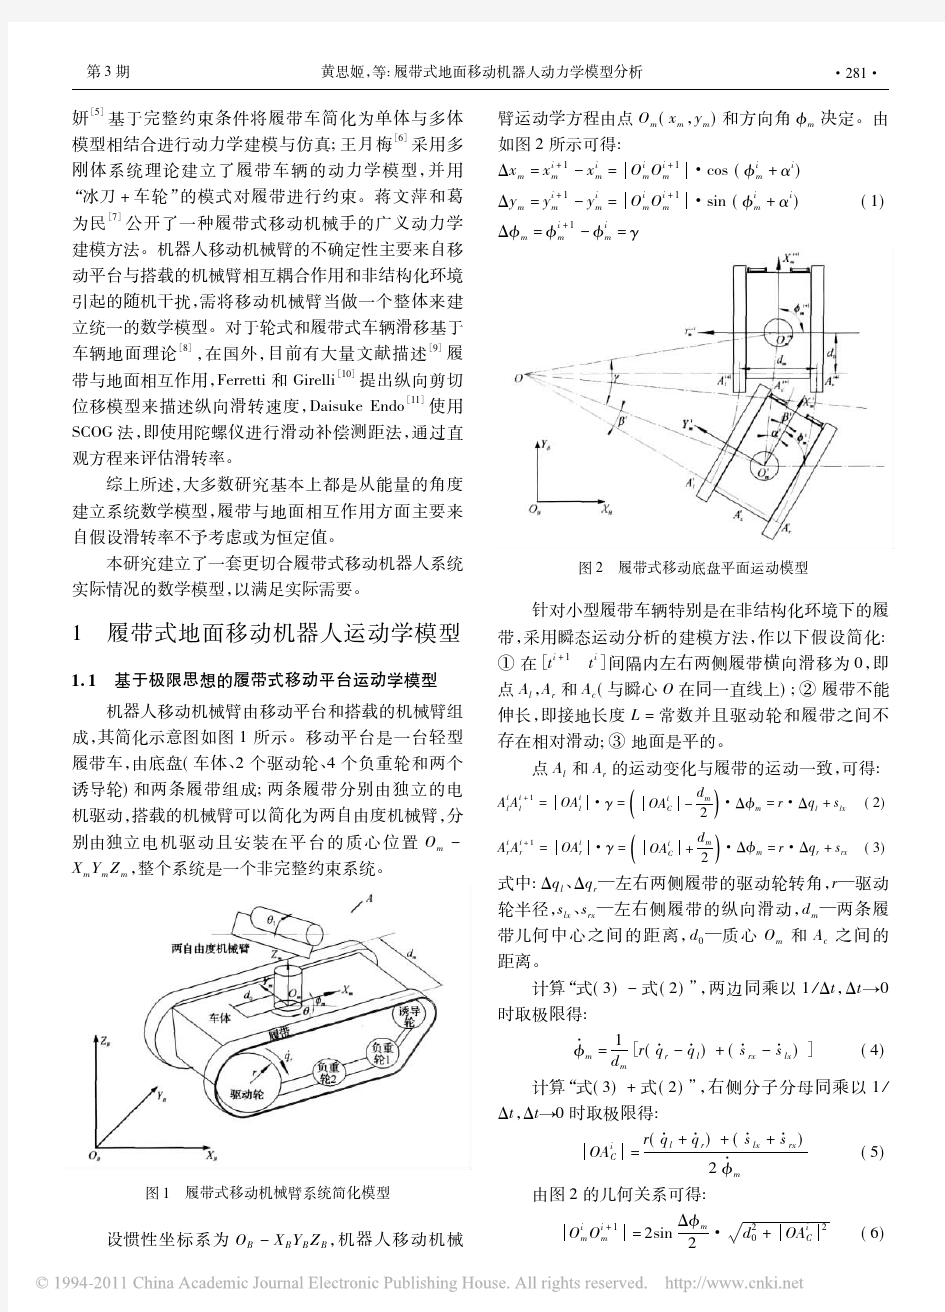 履带式地面移动机器人动力学模型分析(1)